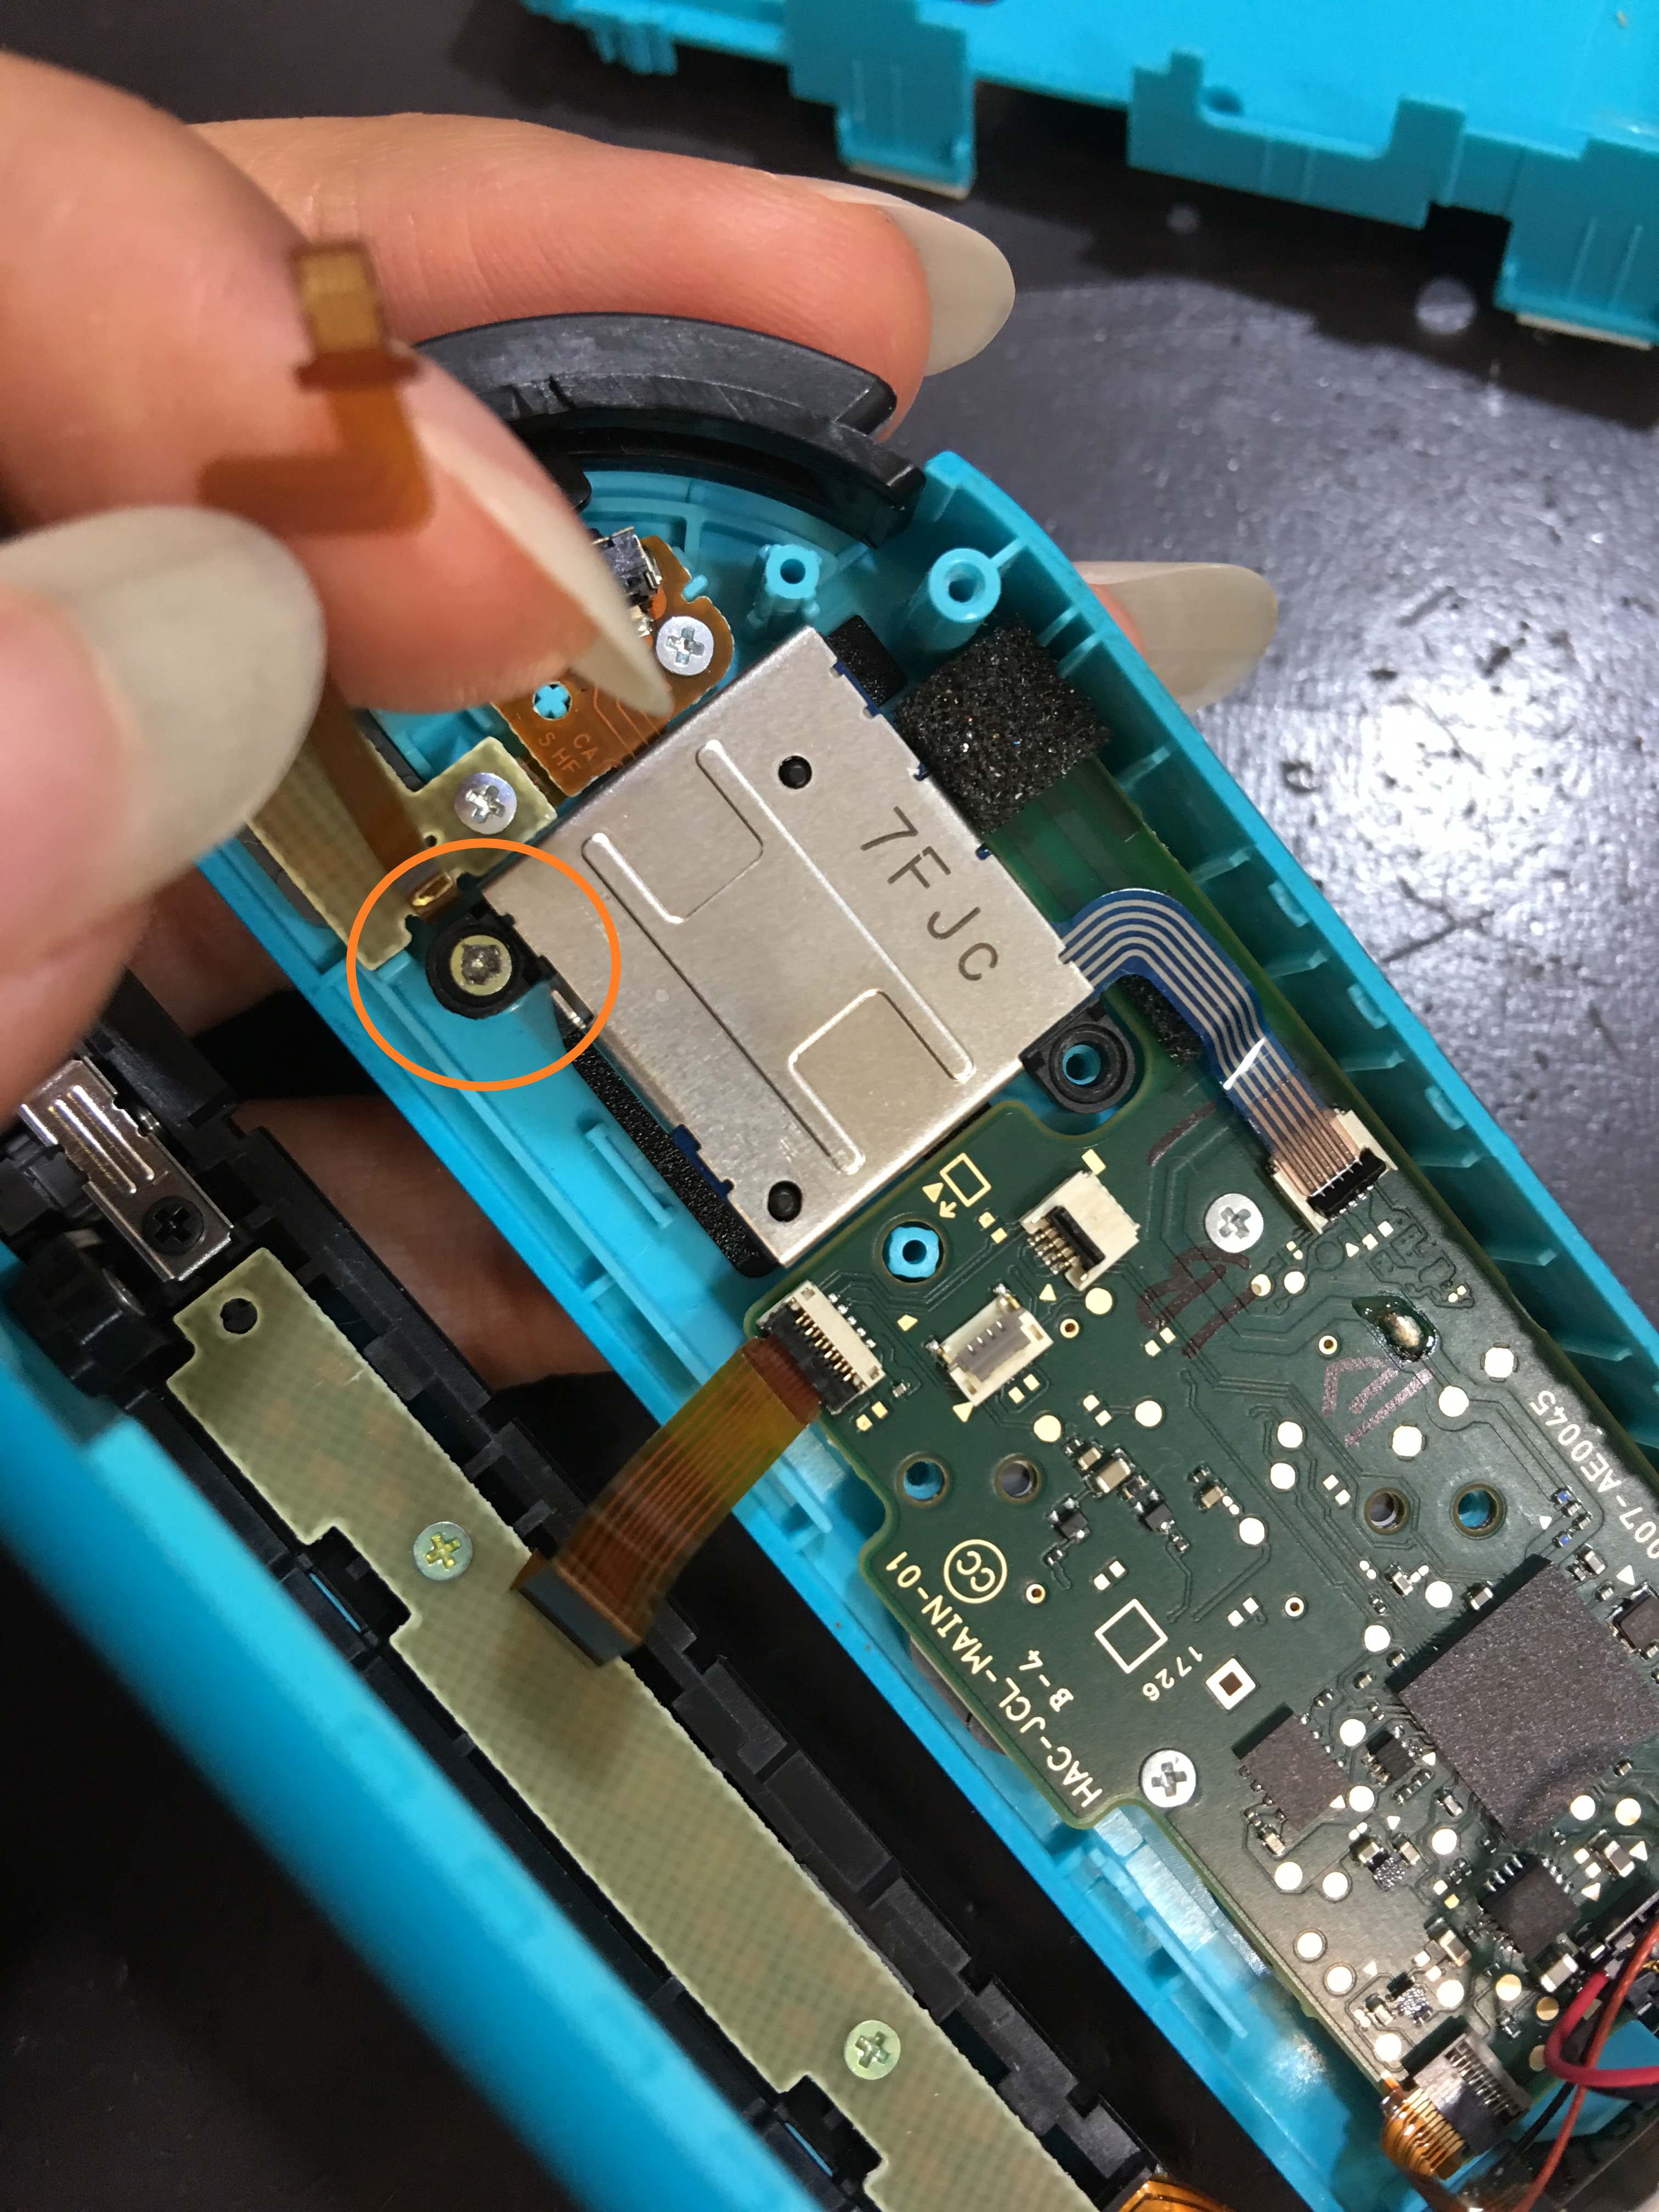 ゲーム機の自己分解時 ネジのなめりに要注意 Nintendo3ds Switch Psp 修理のゲームホスピタル Nintendo3ds ニンテンドーds Psp 修理